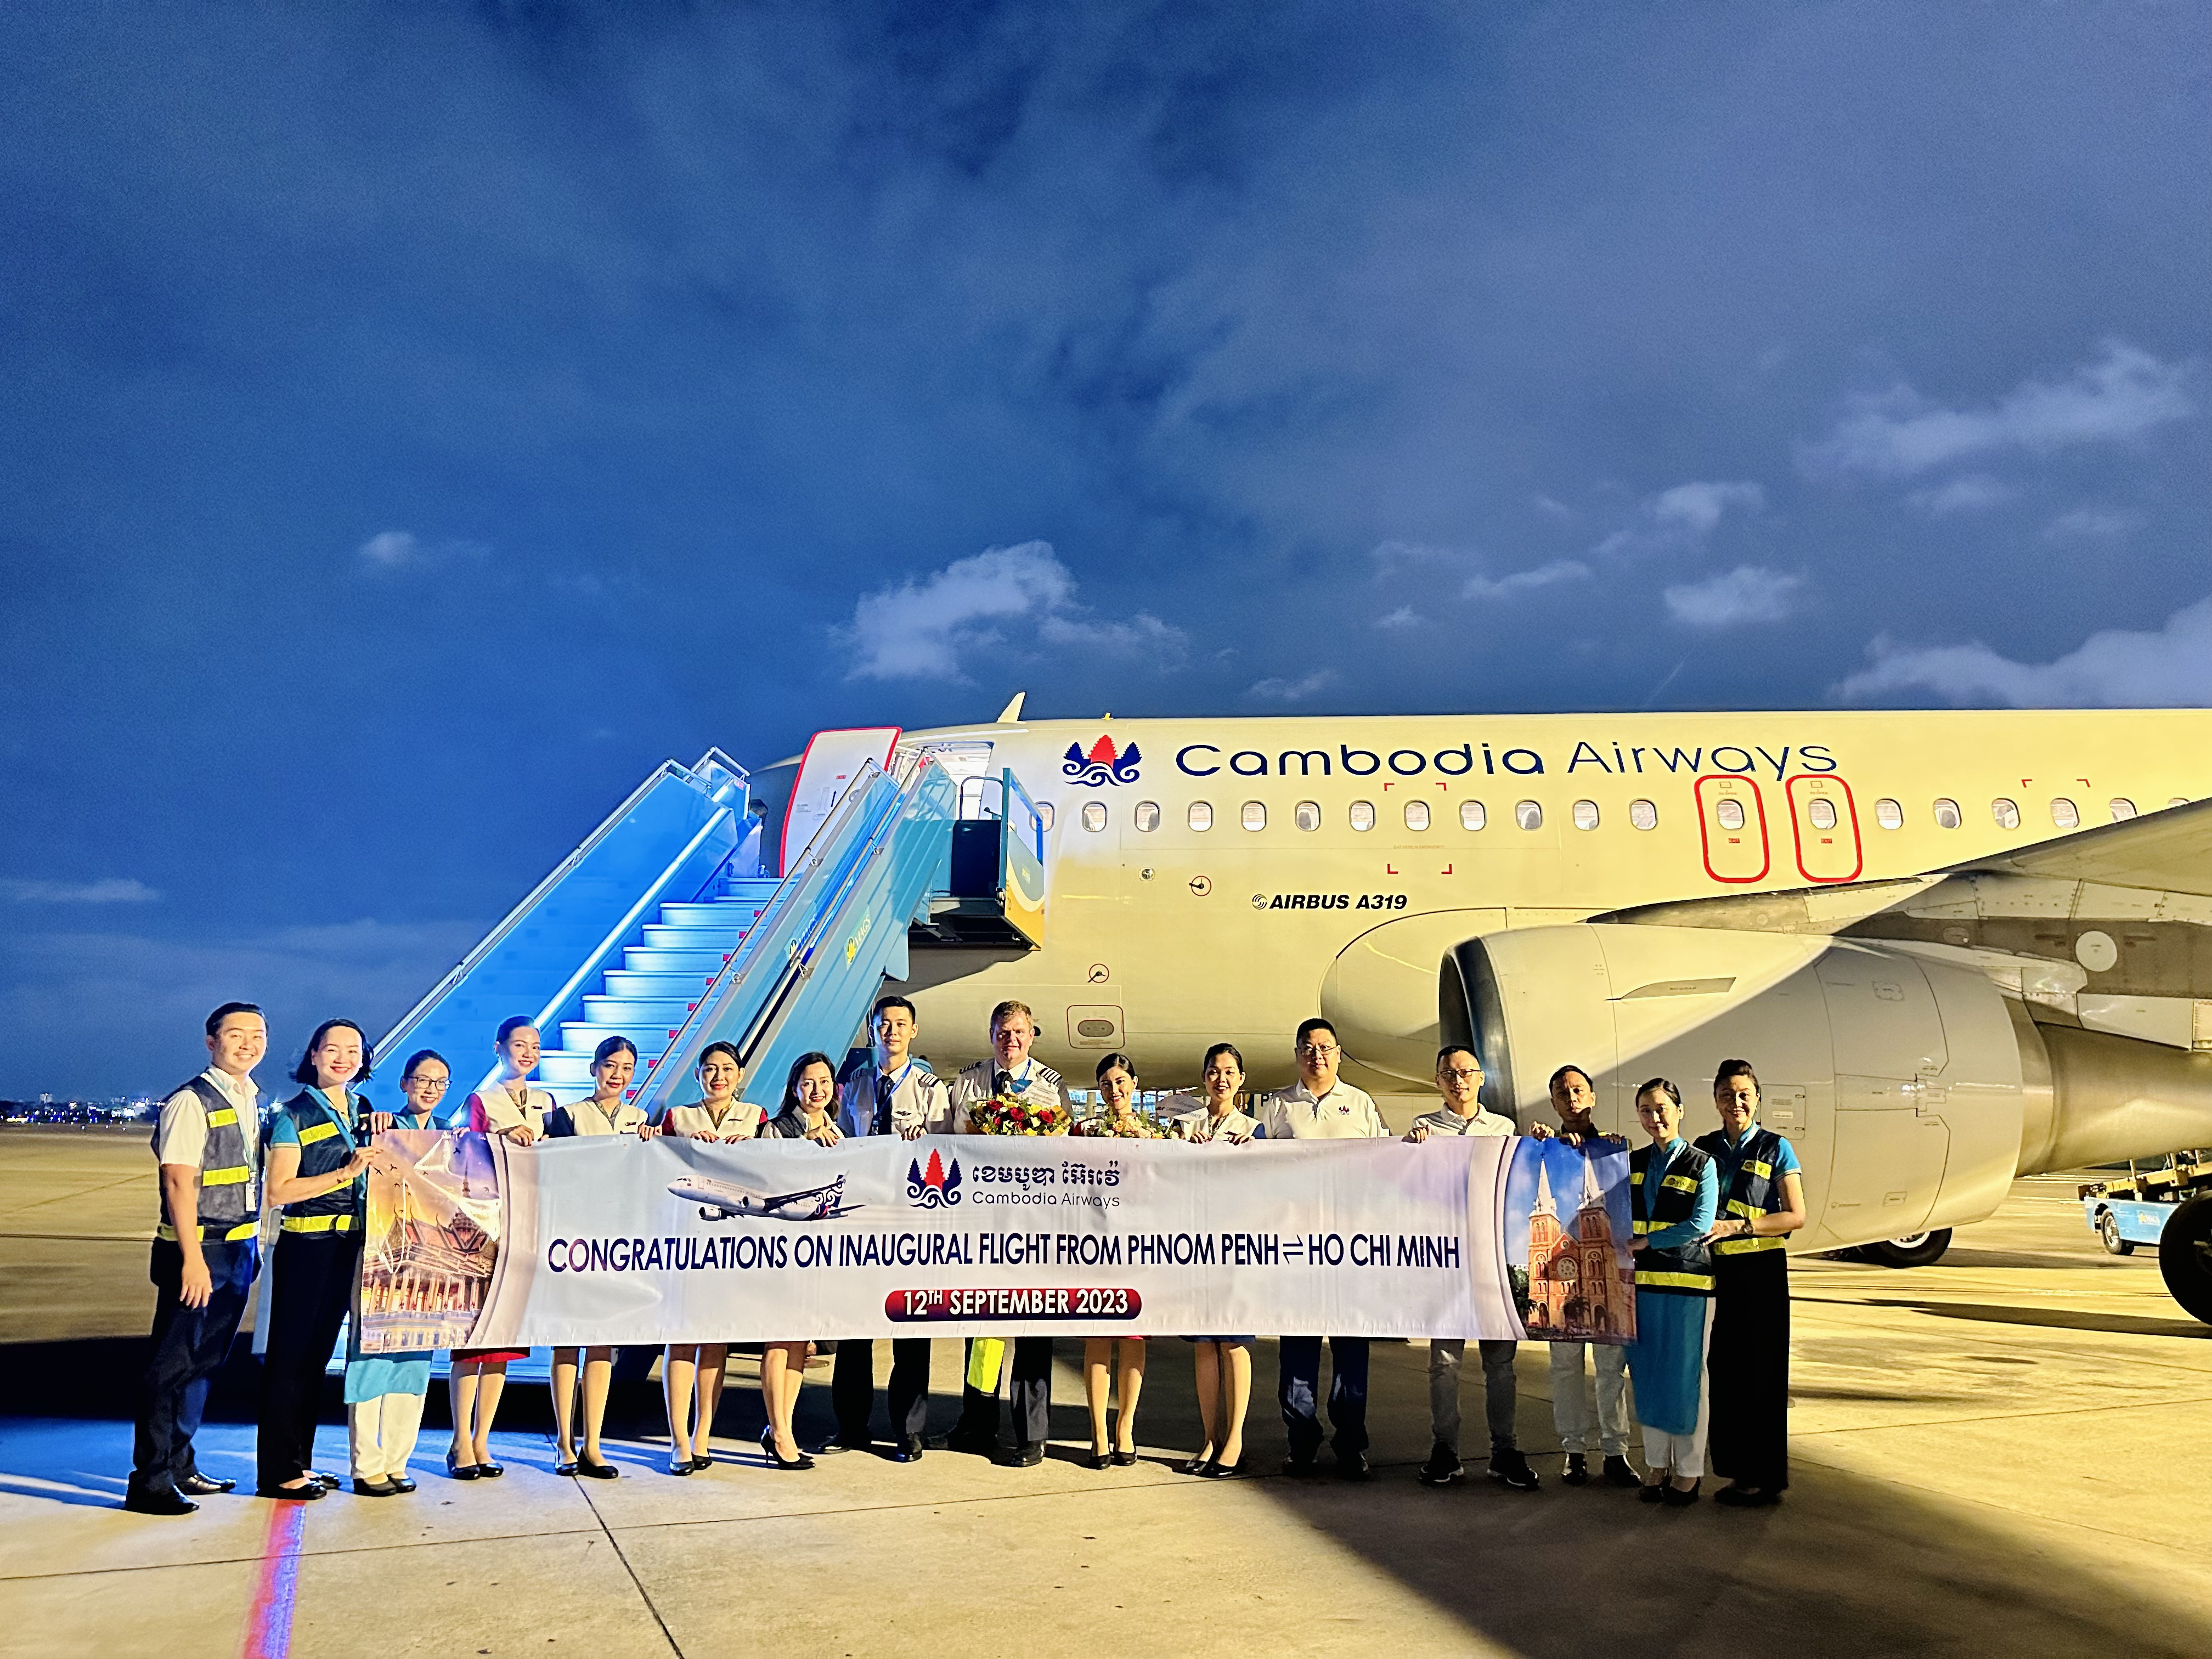 HÃNG HÀNG KHÔNG CAMBODIA AIRWAYS KHAI THÁC CHUYẾN BAY THƯỜNG LỆ ĐẾN THÀNH PHỐ HỒ CHÍ MINH